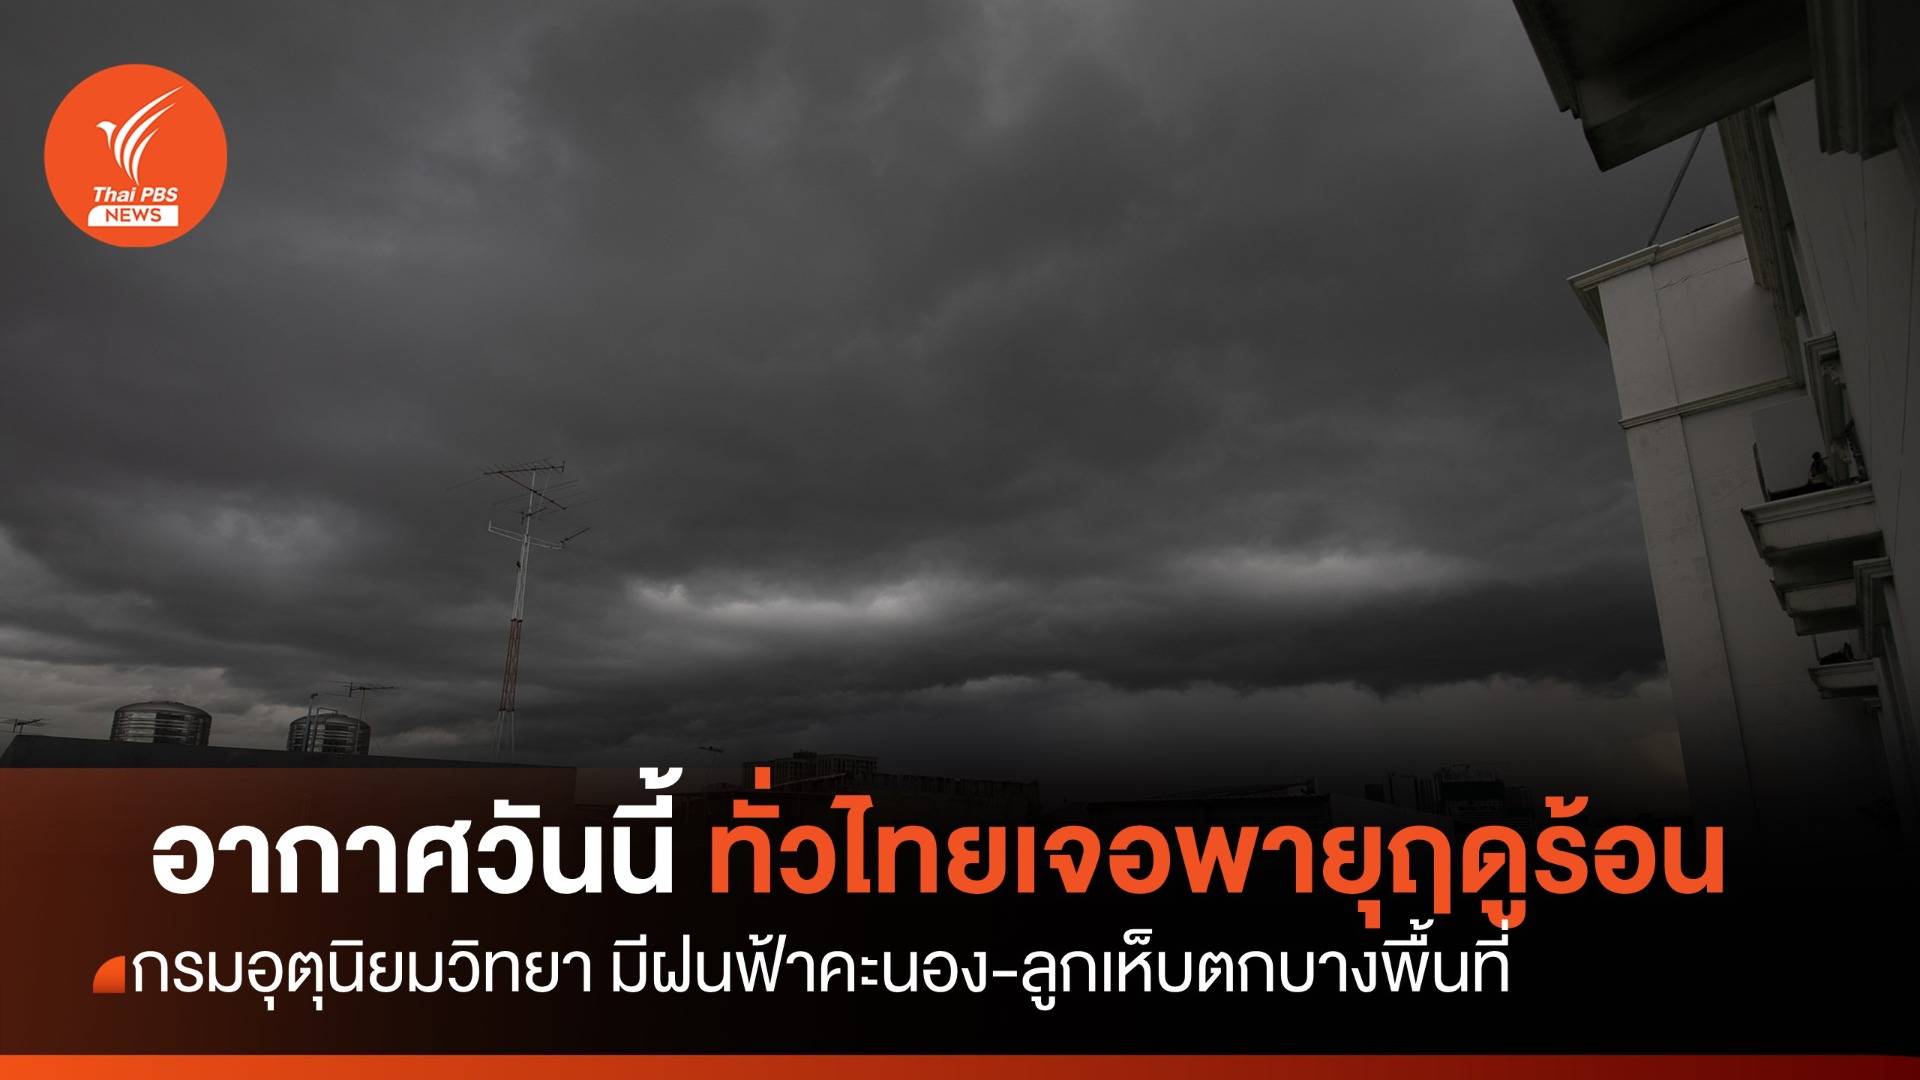 สภาพอากาศวันนี้ ทั่วไทยเกิดพายุฤดูร้อน -ฝนฟ้าคะนองร้อยละ 10 